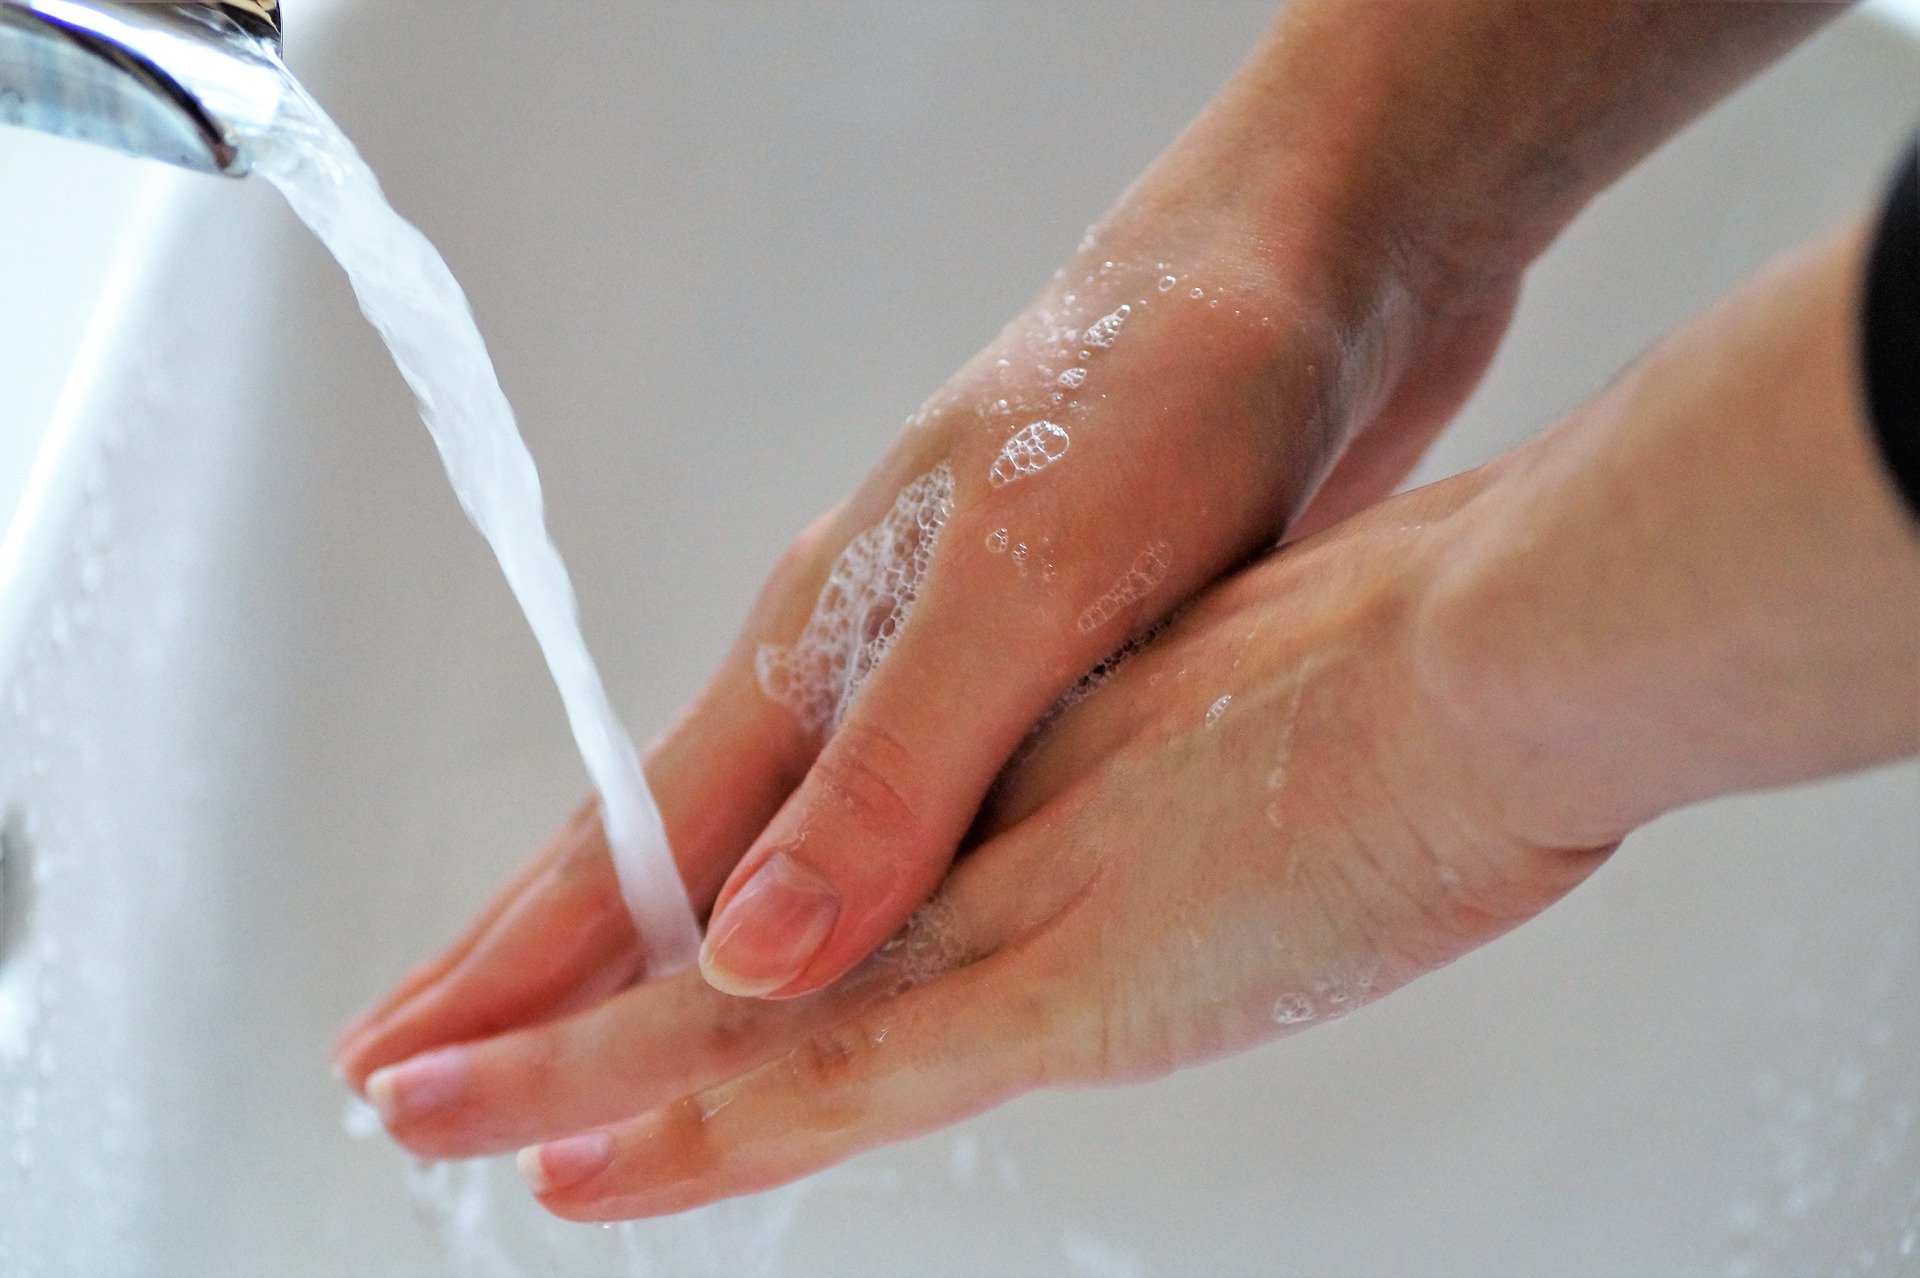 agrajo.com Hygiene am Arbeitsplatz Händewaschen